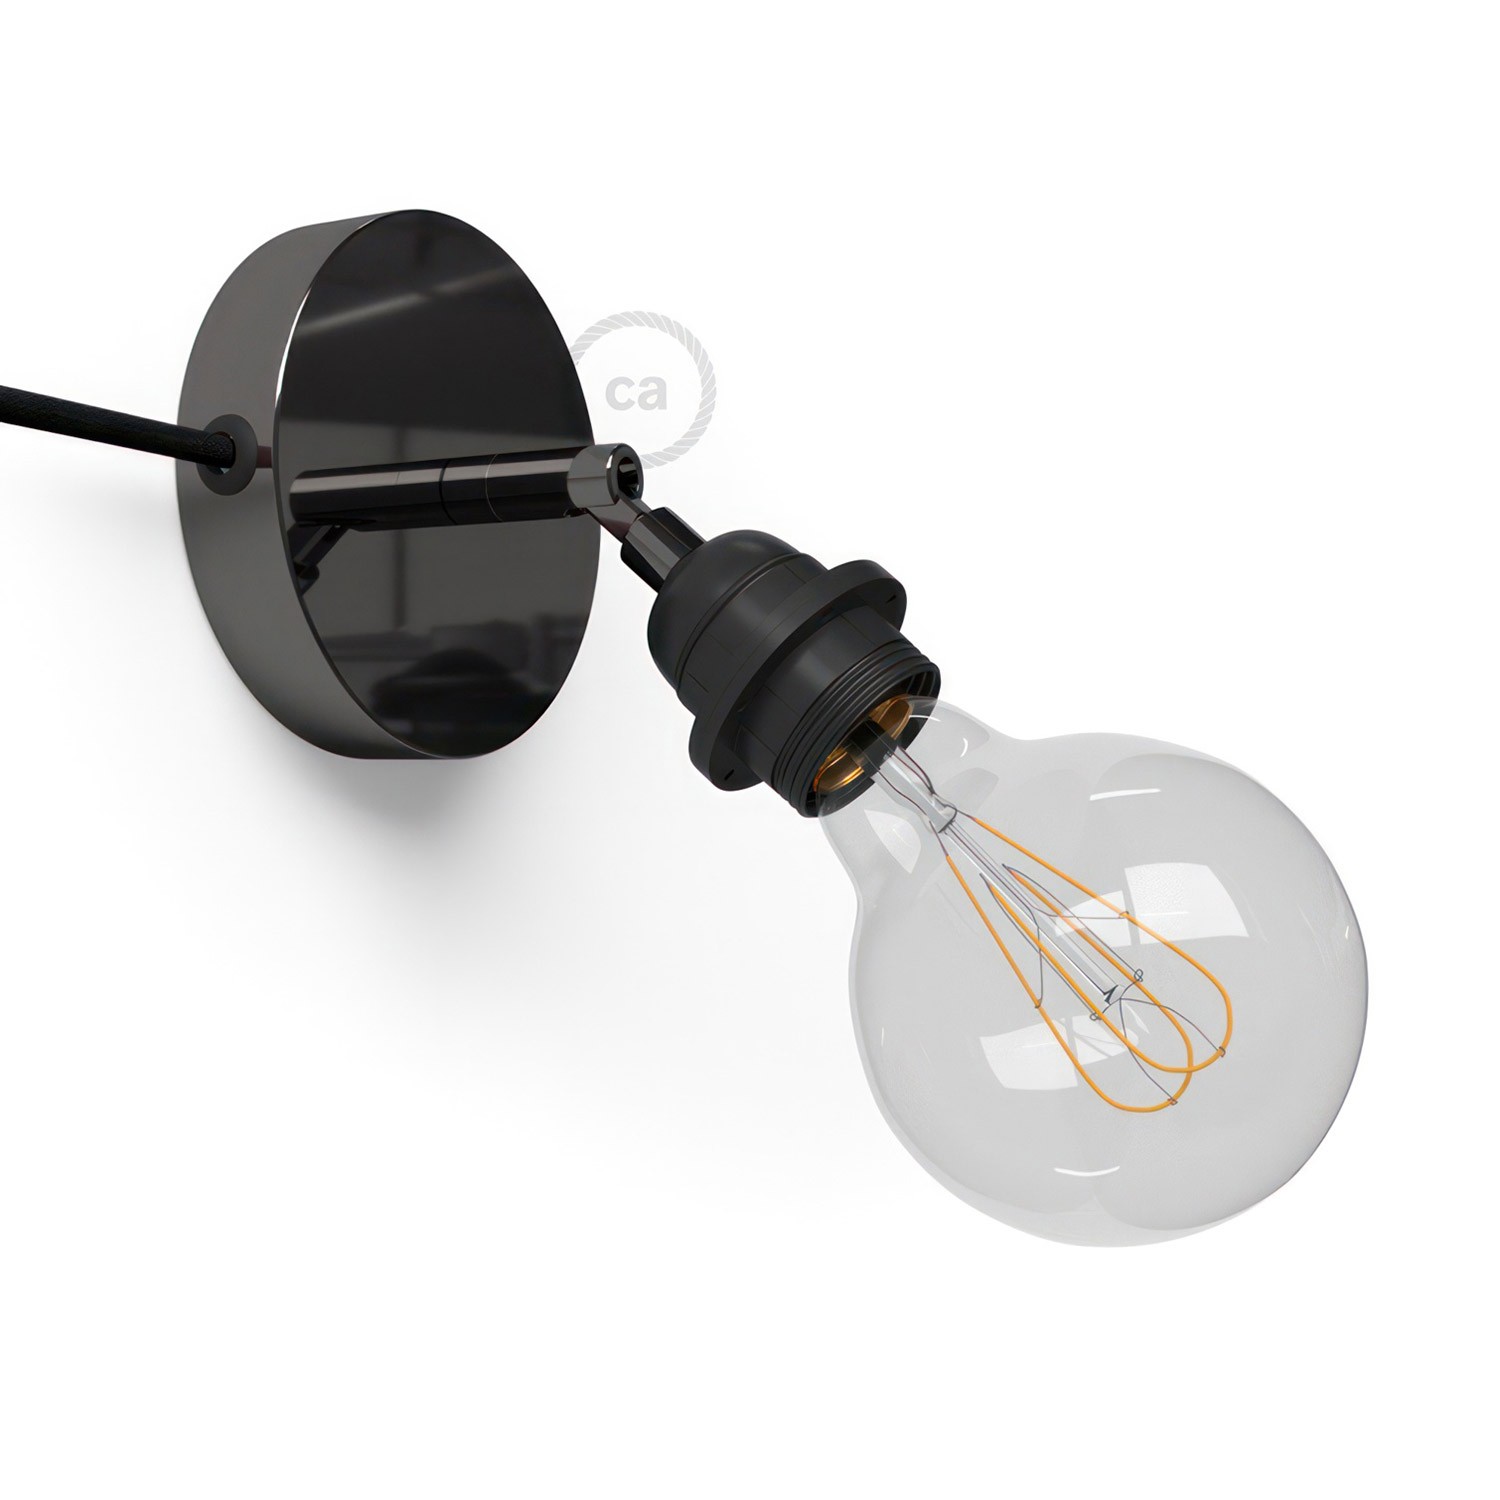 Spostaluce Metallo 90°, zglobna lampa s grlom E27 s dva navojna prstena, tekstilnim kabelom i bočnim rupama